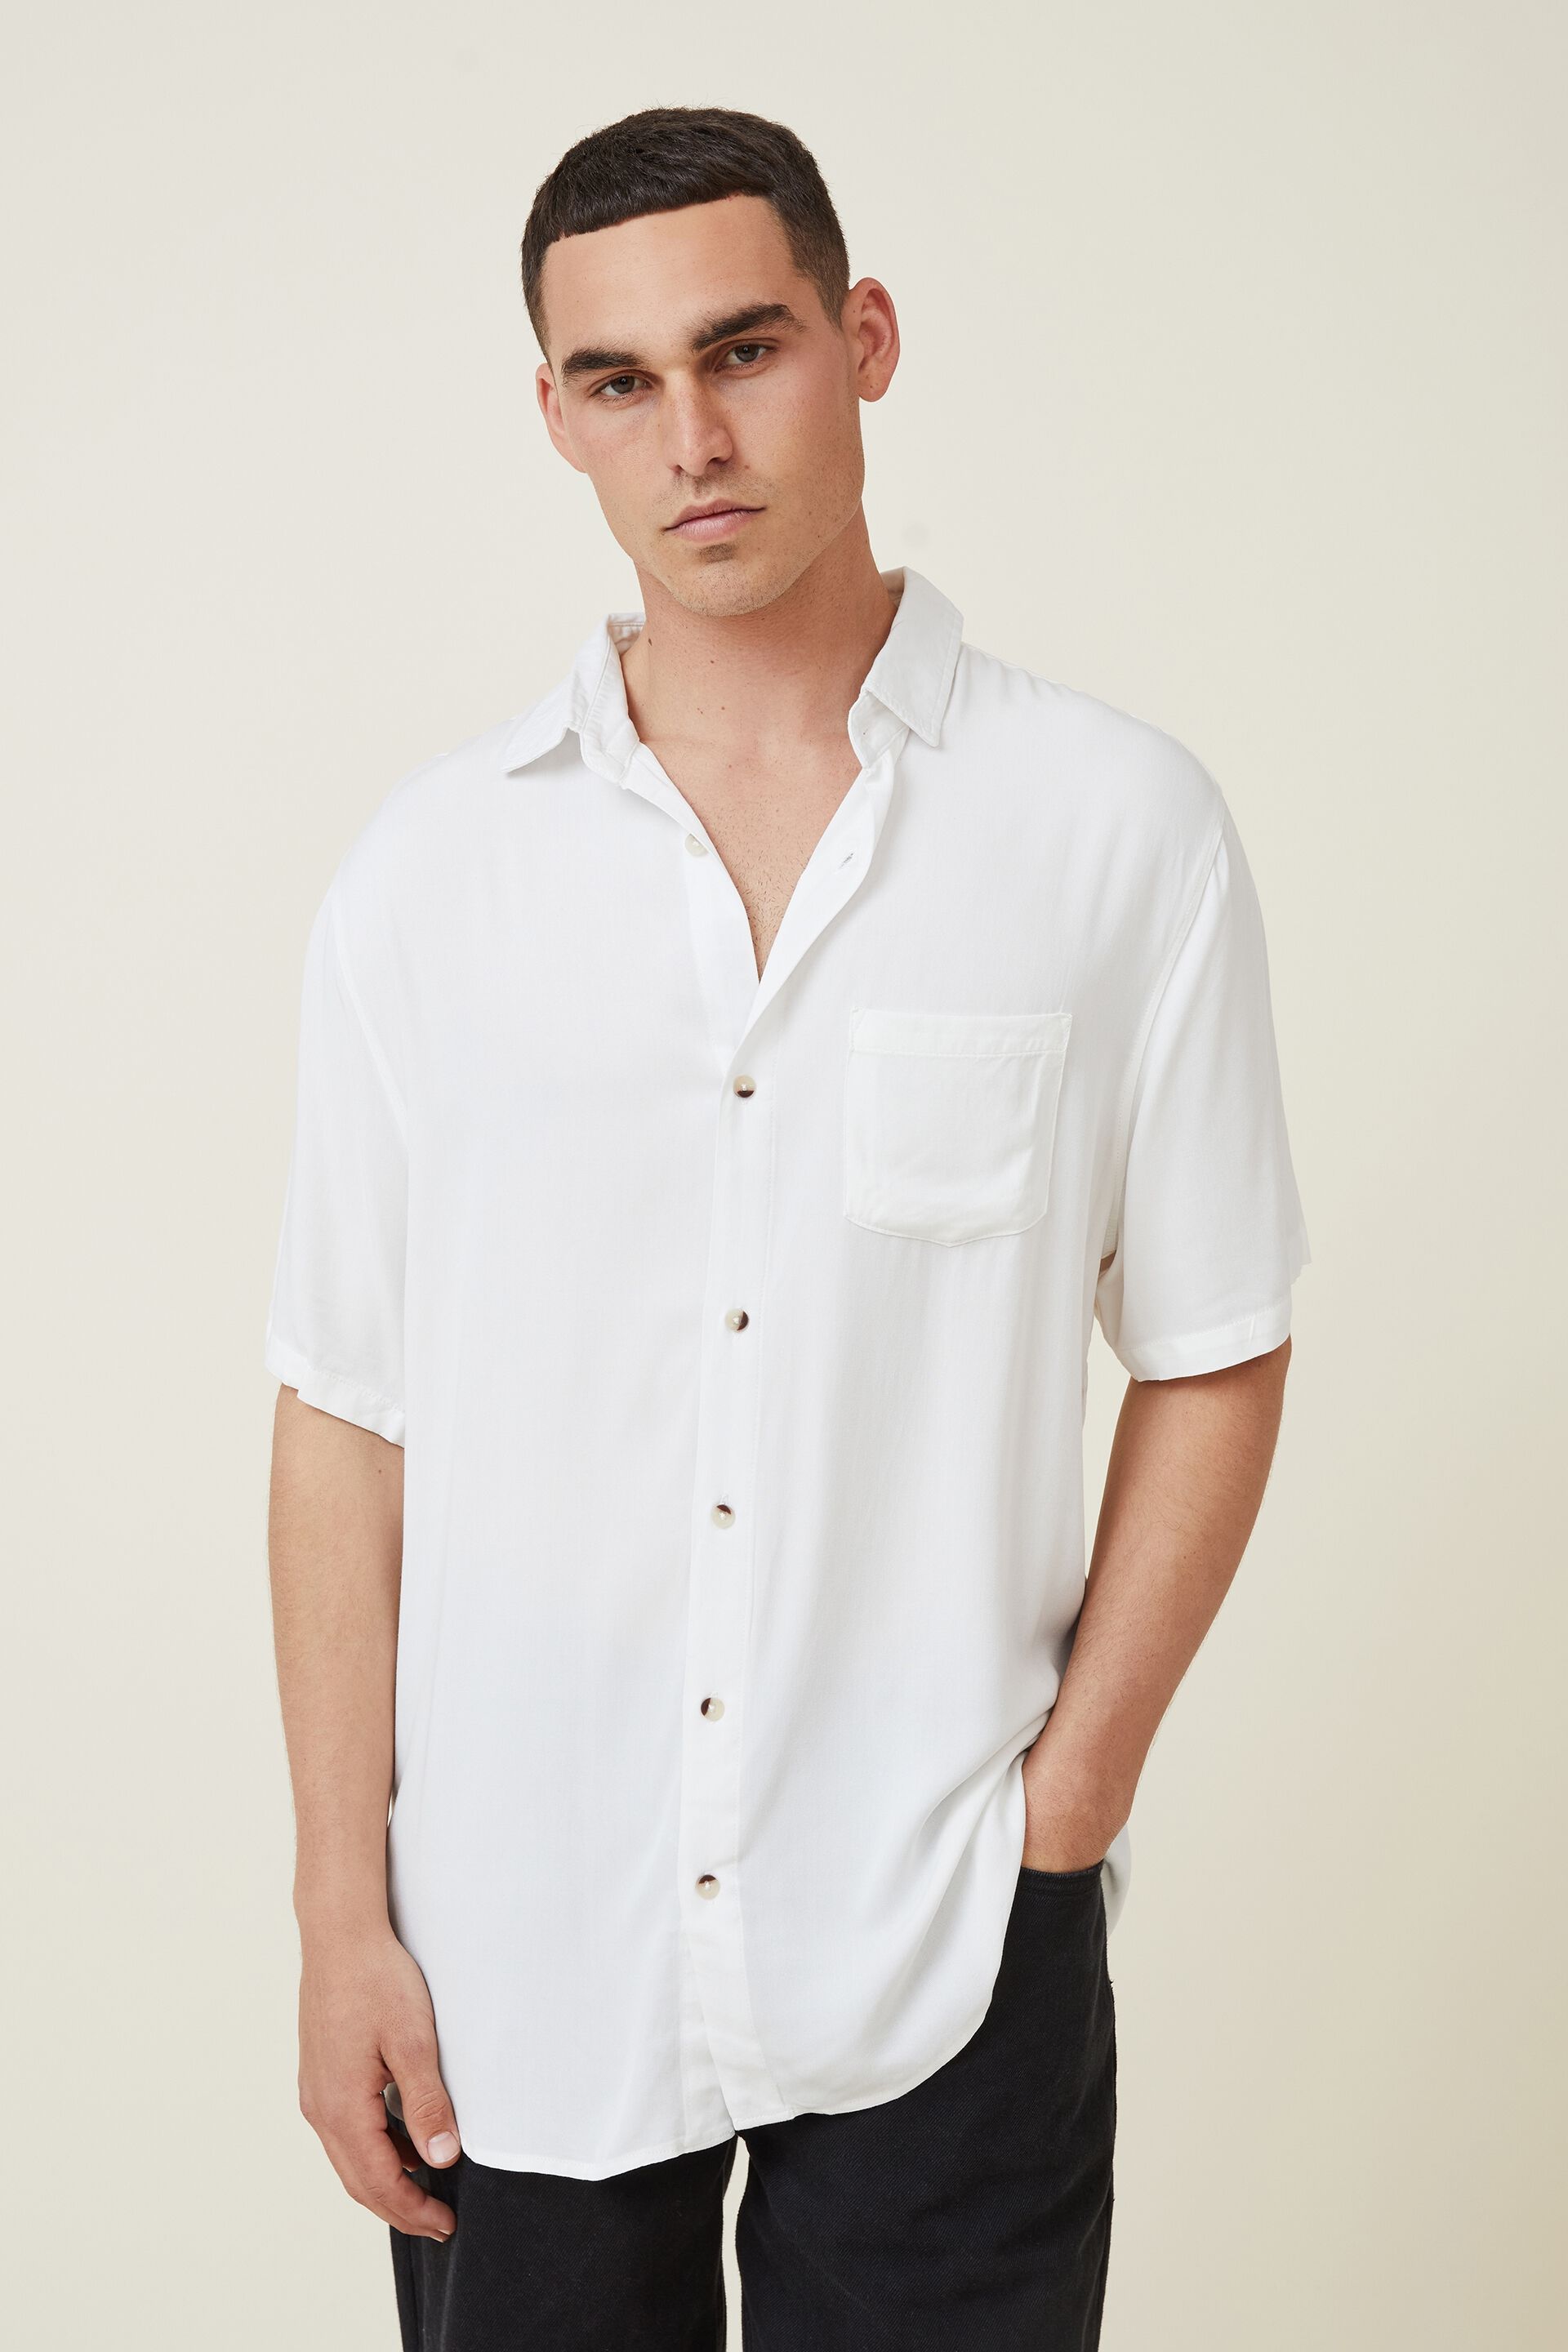 Men's Short Sleeve Shirts - Button Up ...